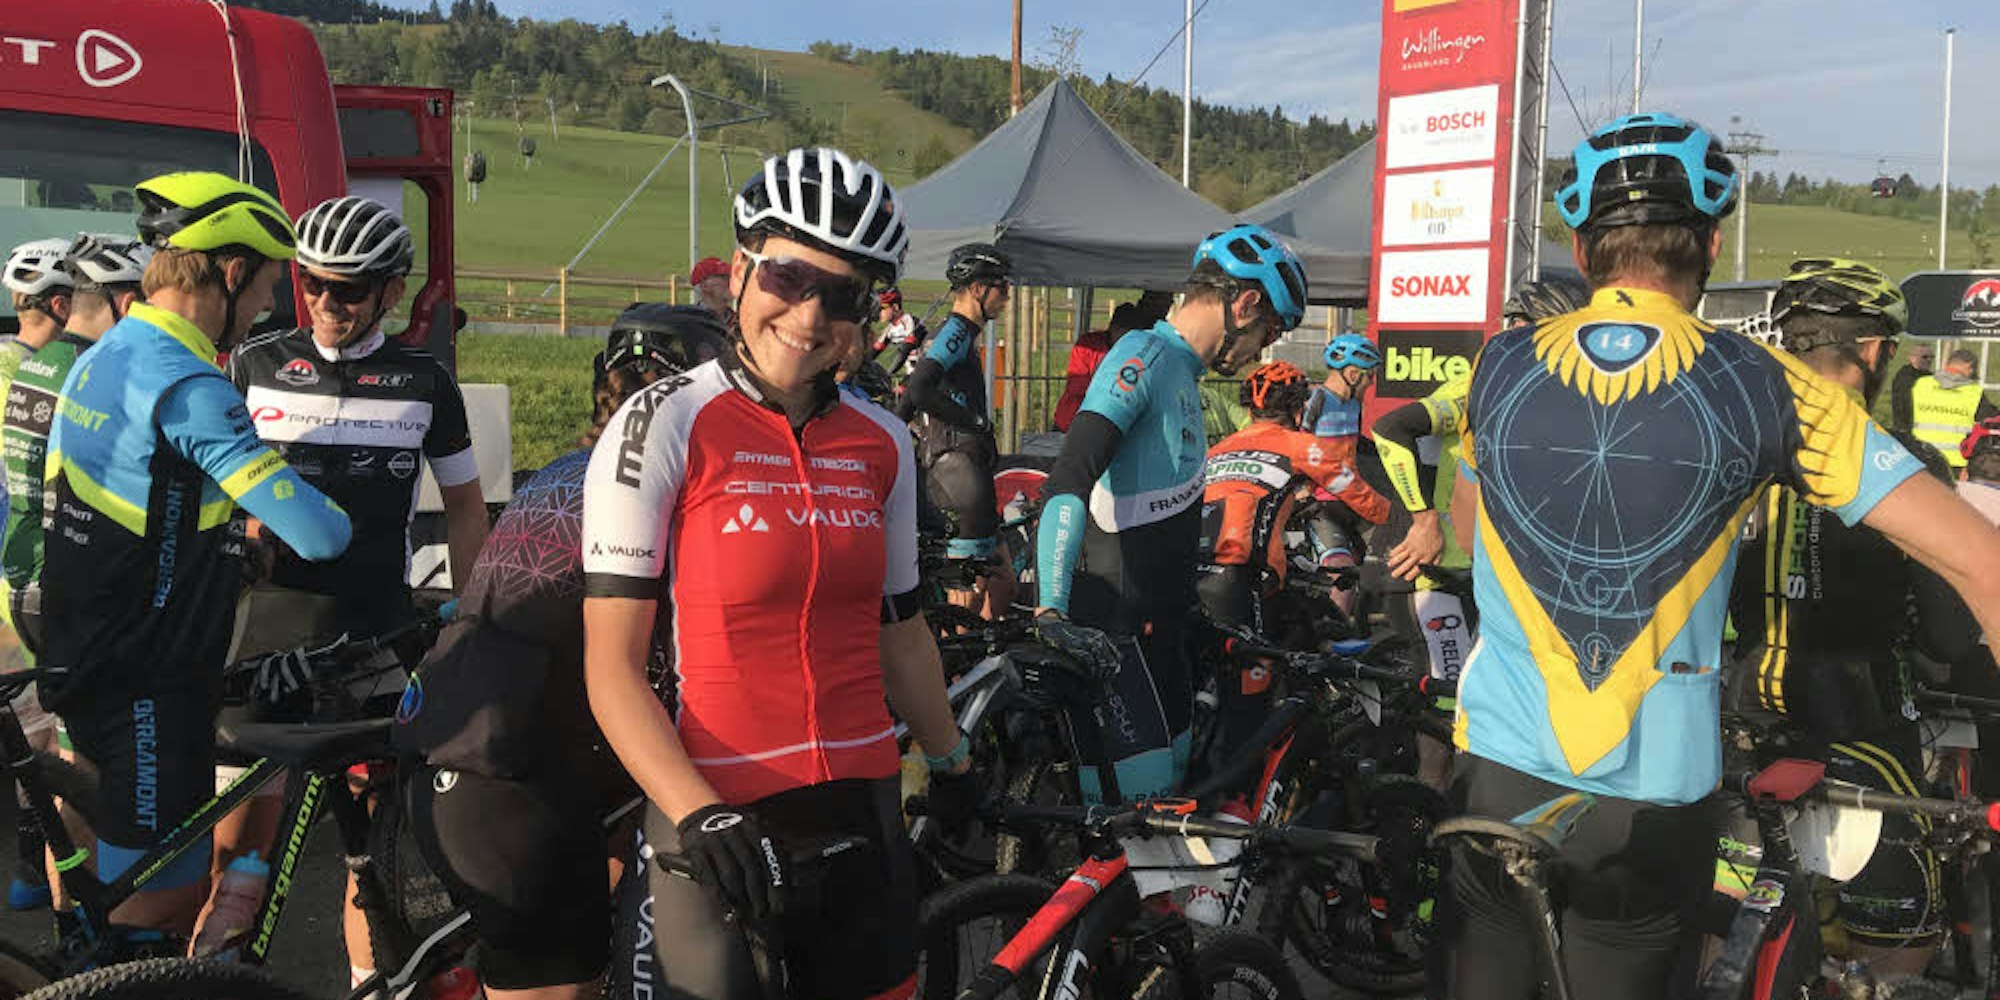 Mountainbikerin Steffi Dohrn aus Bergisch Gladbach feierte beim Rennen in Willingen den Sieg, kann auch über weiteren Podestdplätze strahlen.